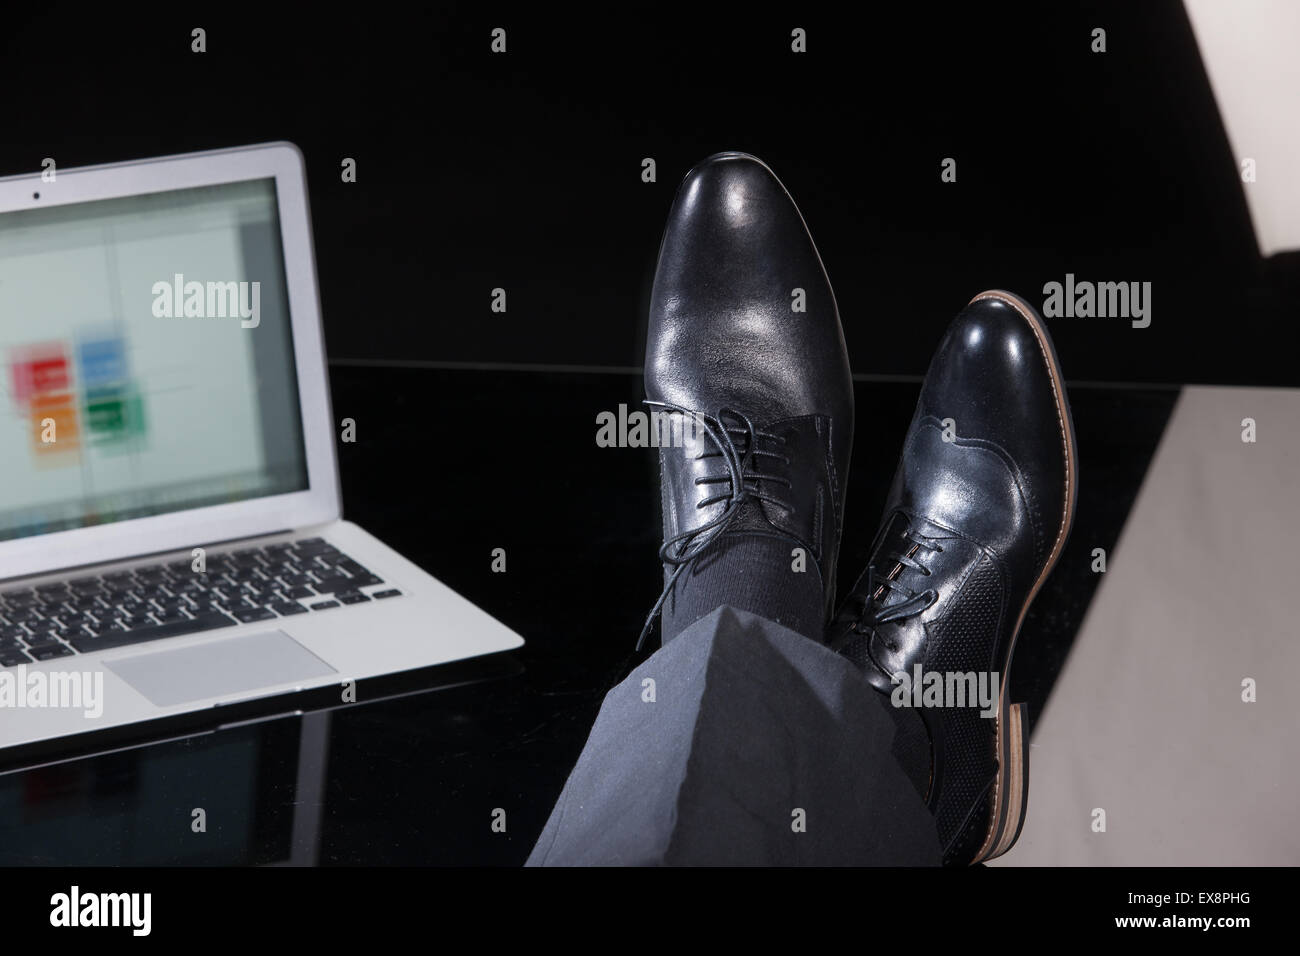 Uomo uomini persone gamba maschio Pantaloni Pantaloni scarpe computer notebook schermo tastiera di monitorare le informazioni di tabella di riflessione di vetro technol Foto Stock